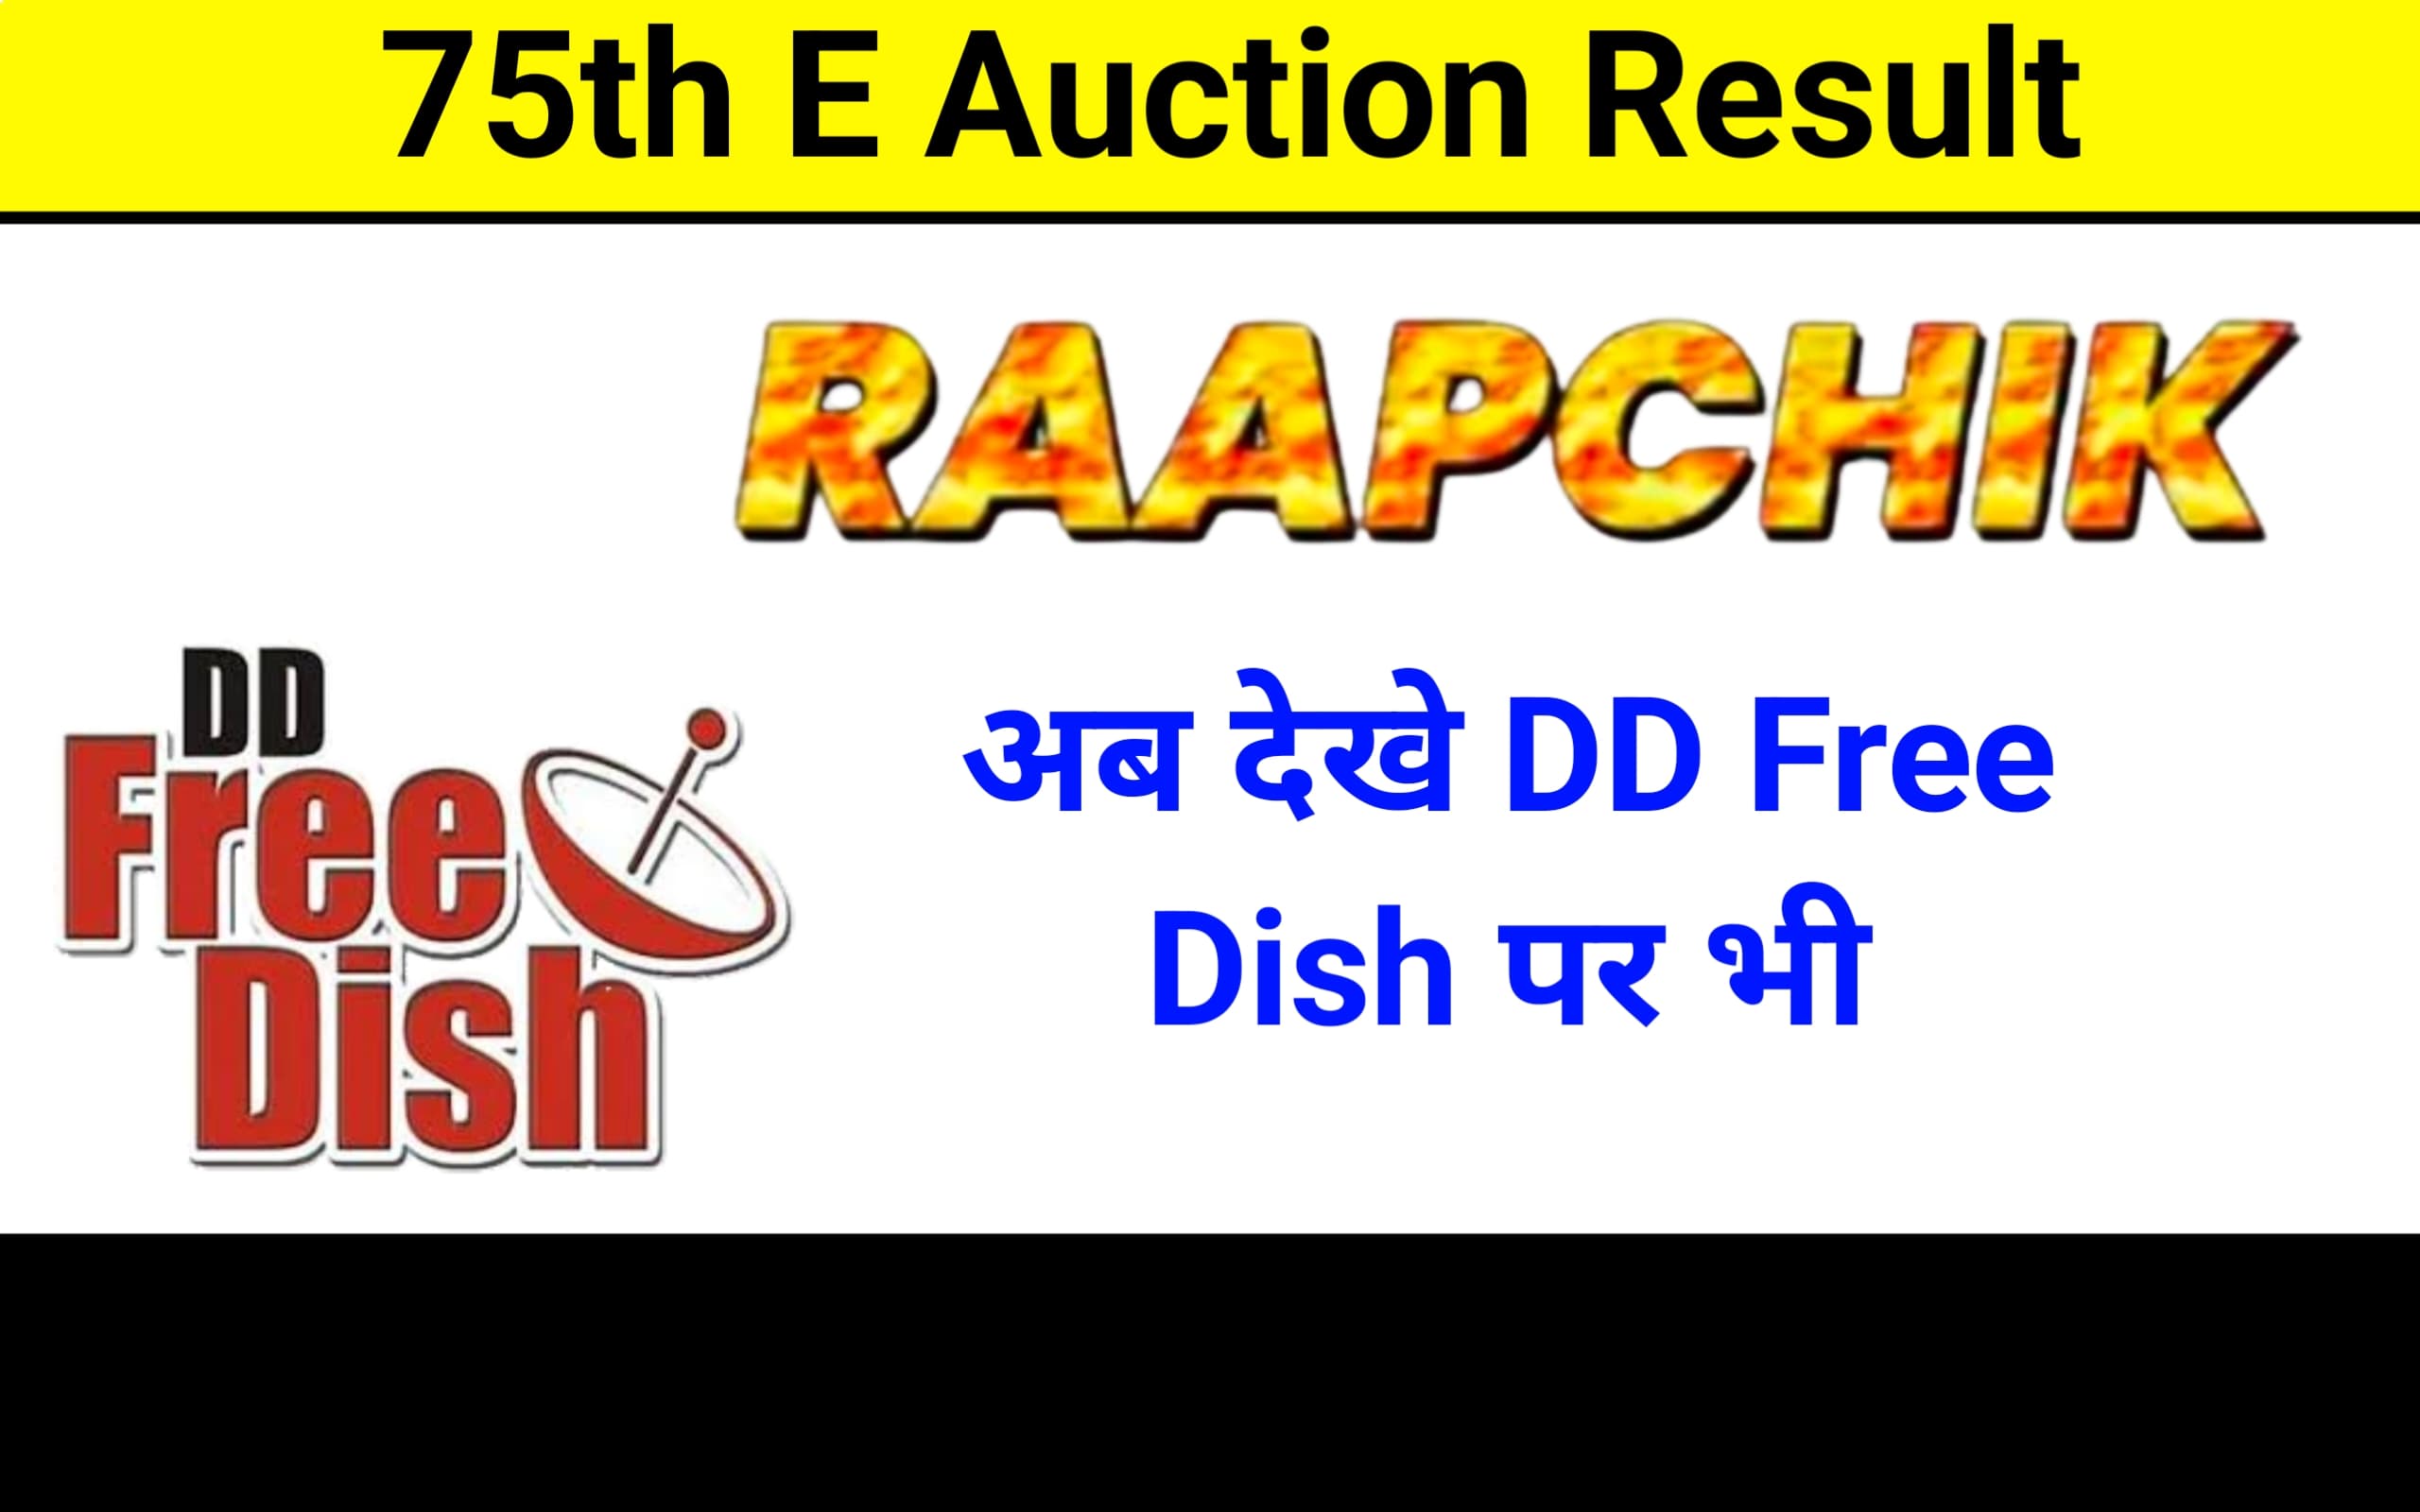 Raapchik Bhojpuri New Channel On DD Free Dish